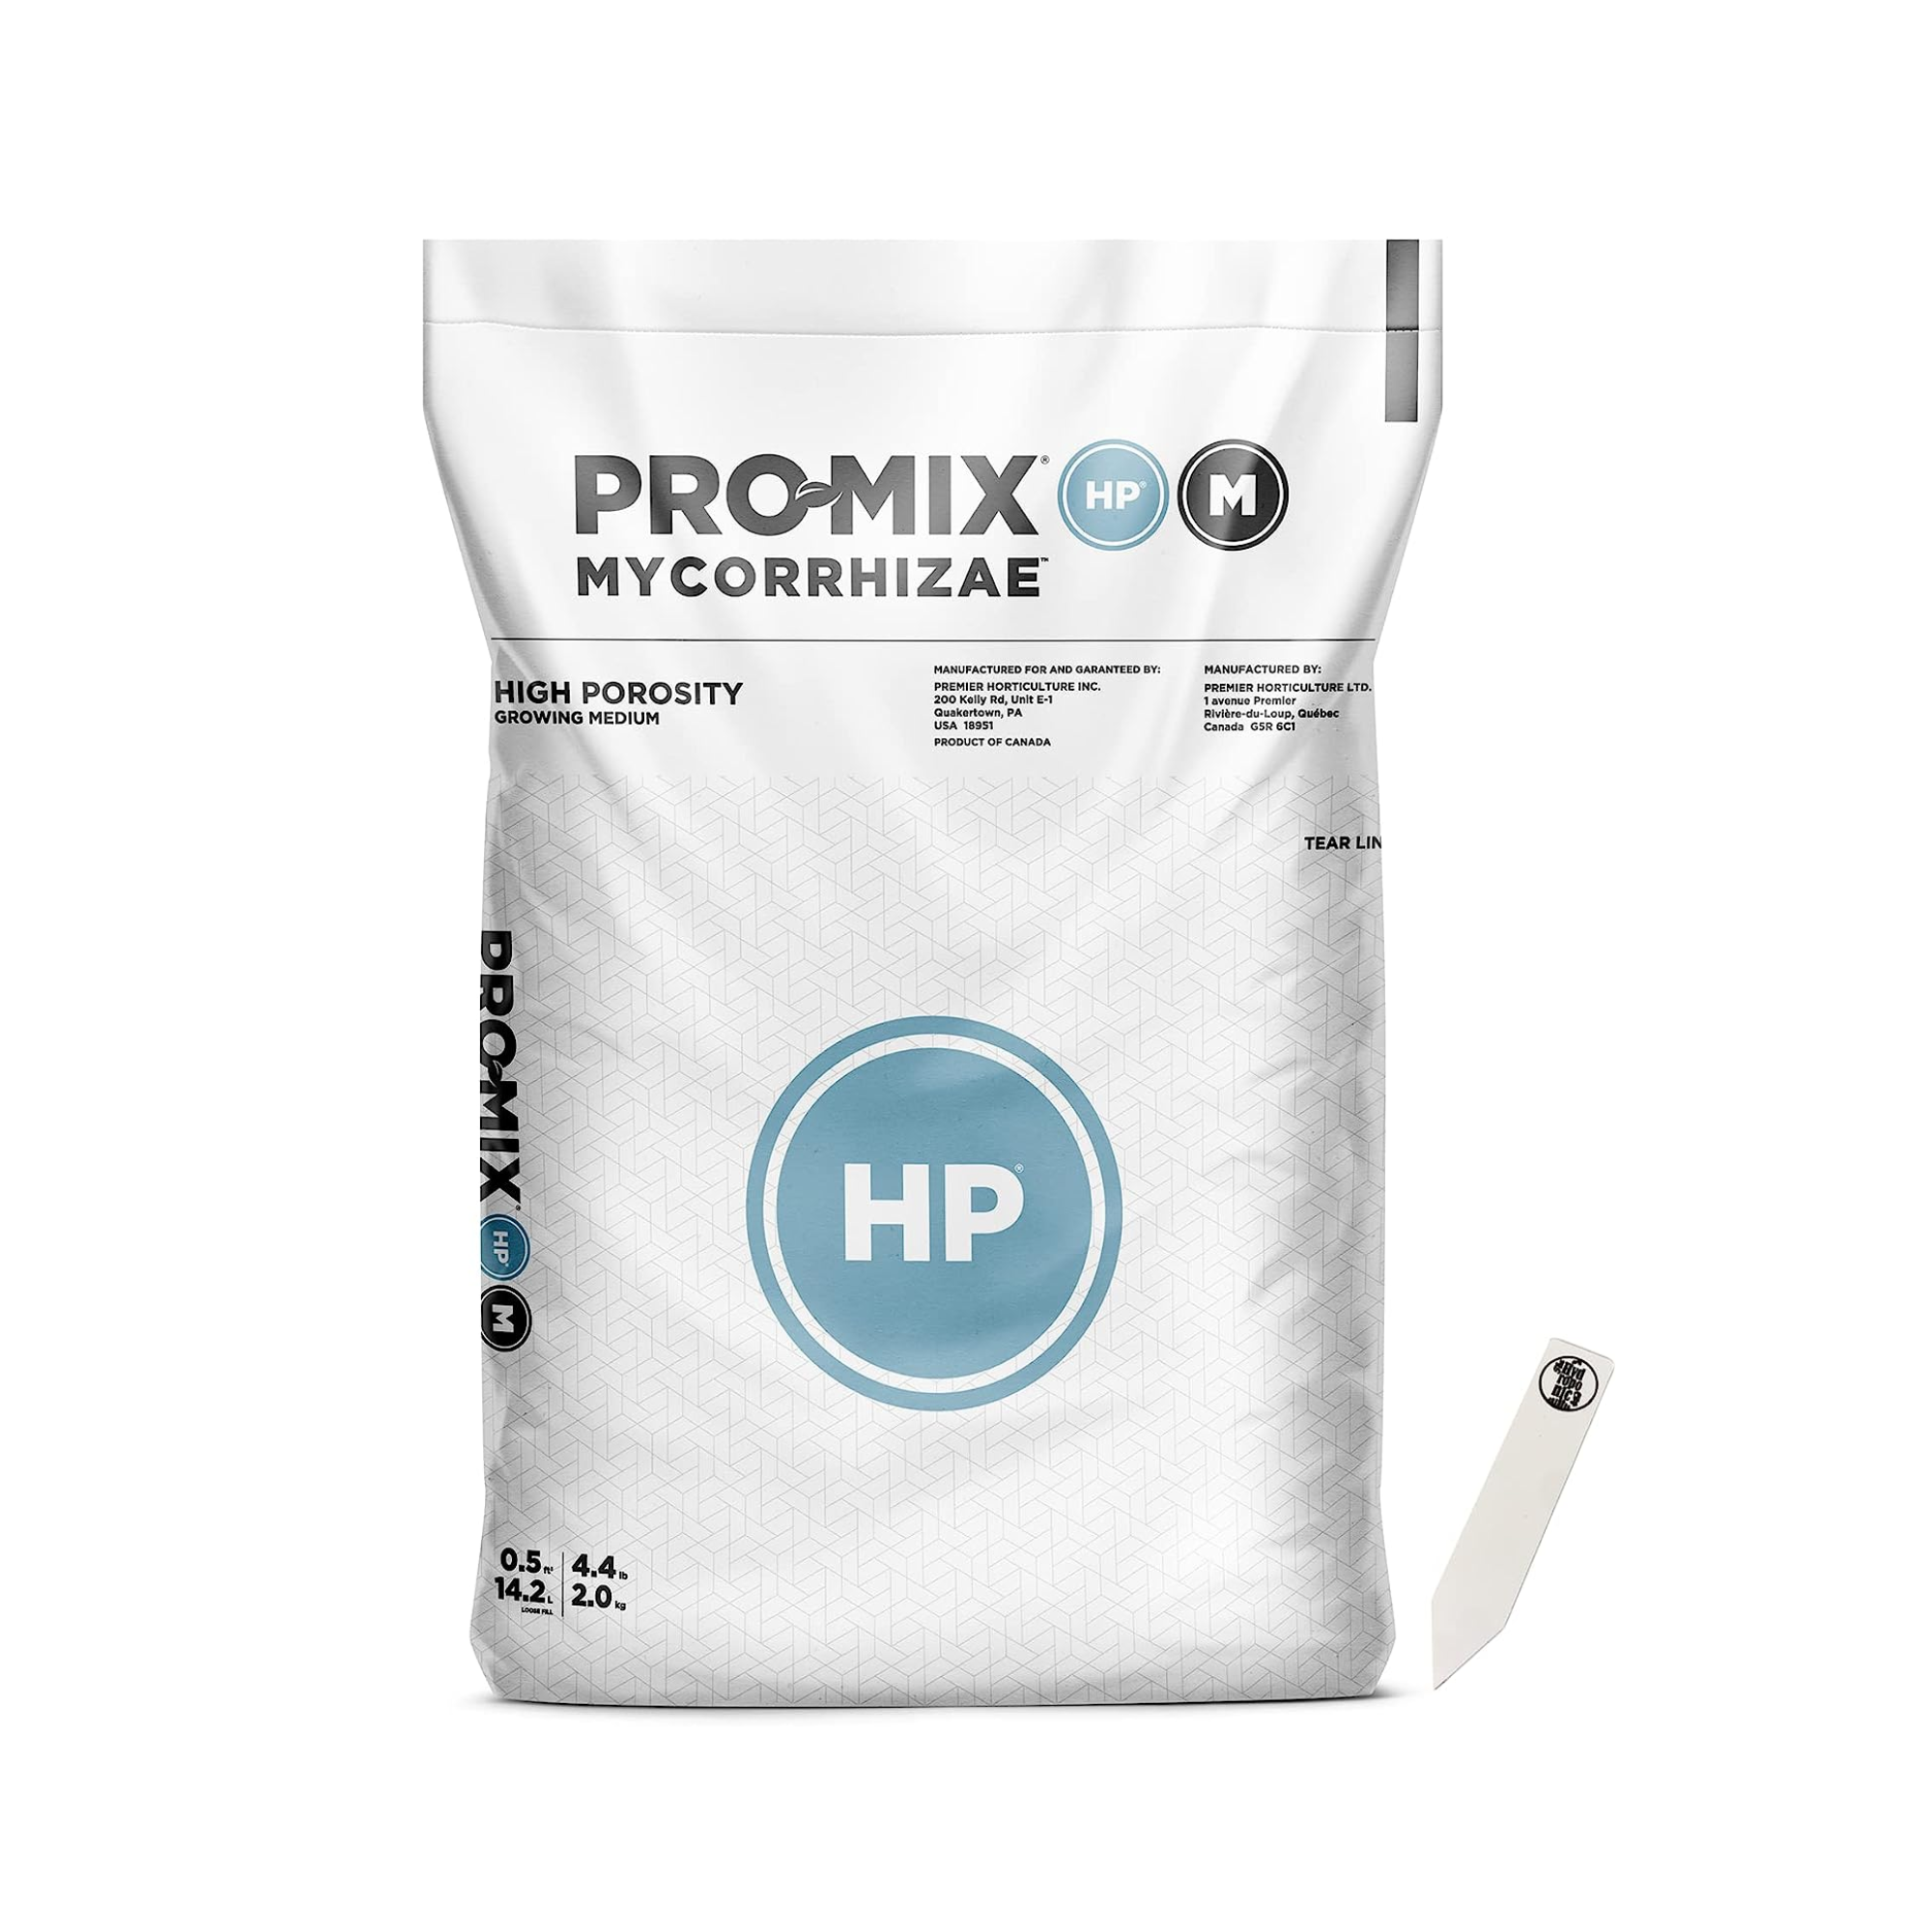 Pro-Mix HP Mycorrhizae Open Top Grow Bag, 0.5 CF